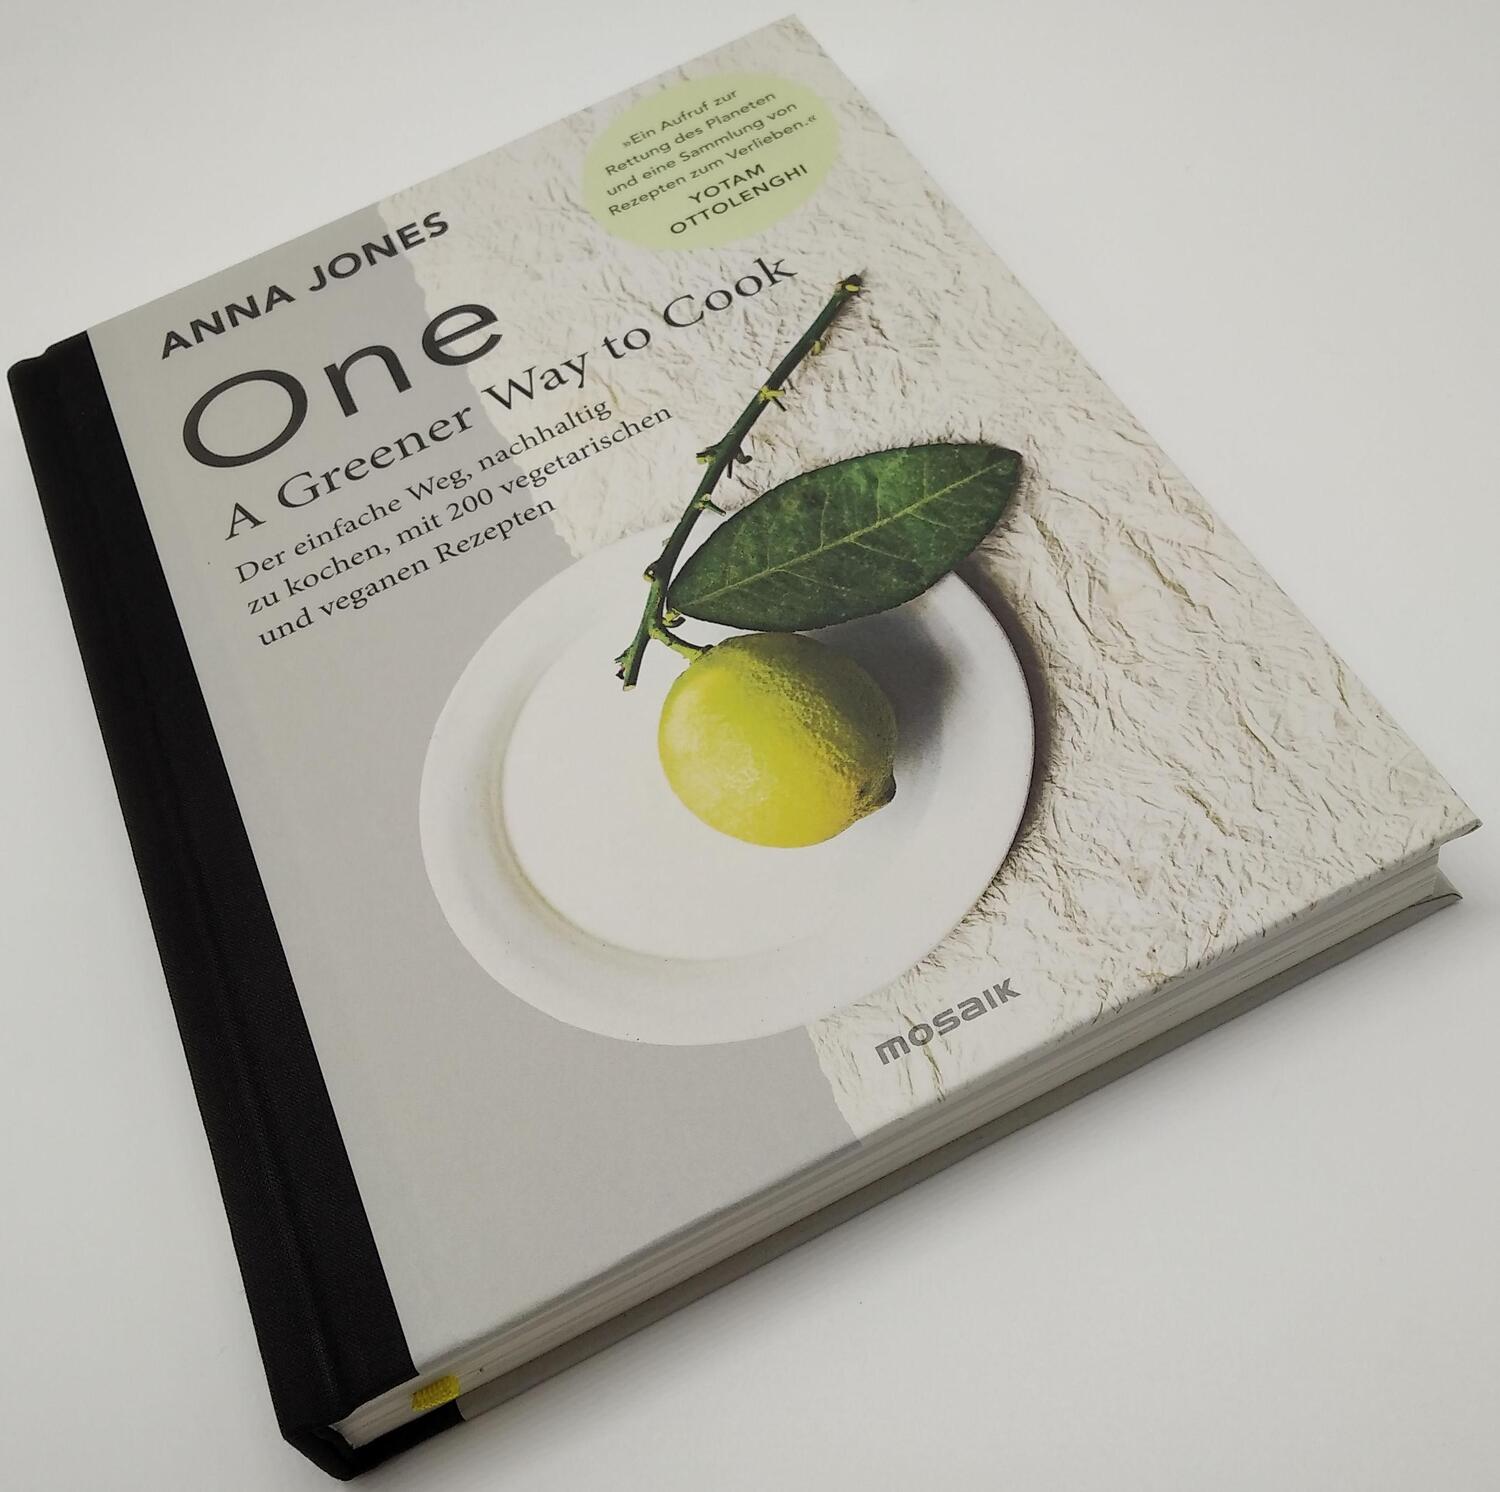 Bild: 9783442393886 | ONE - A Greener Way to Cook | Anna Jones | Buch | 336 S. | Deutsch